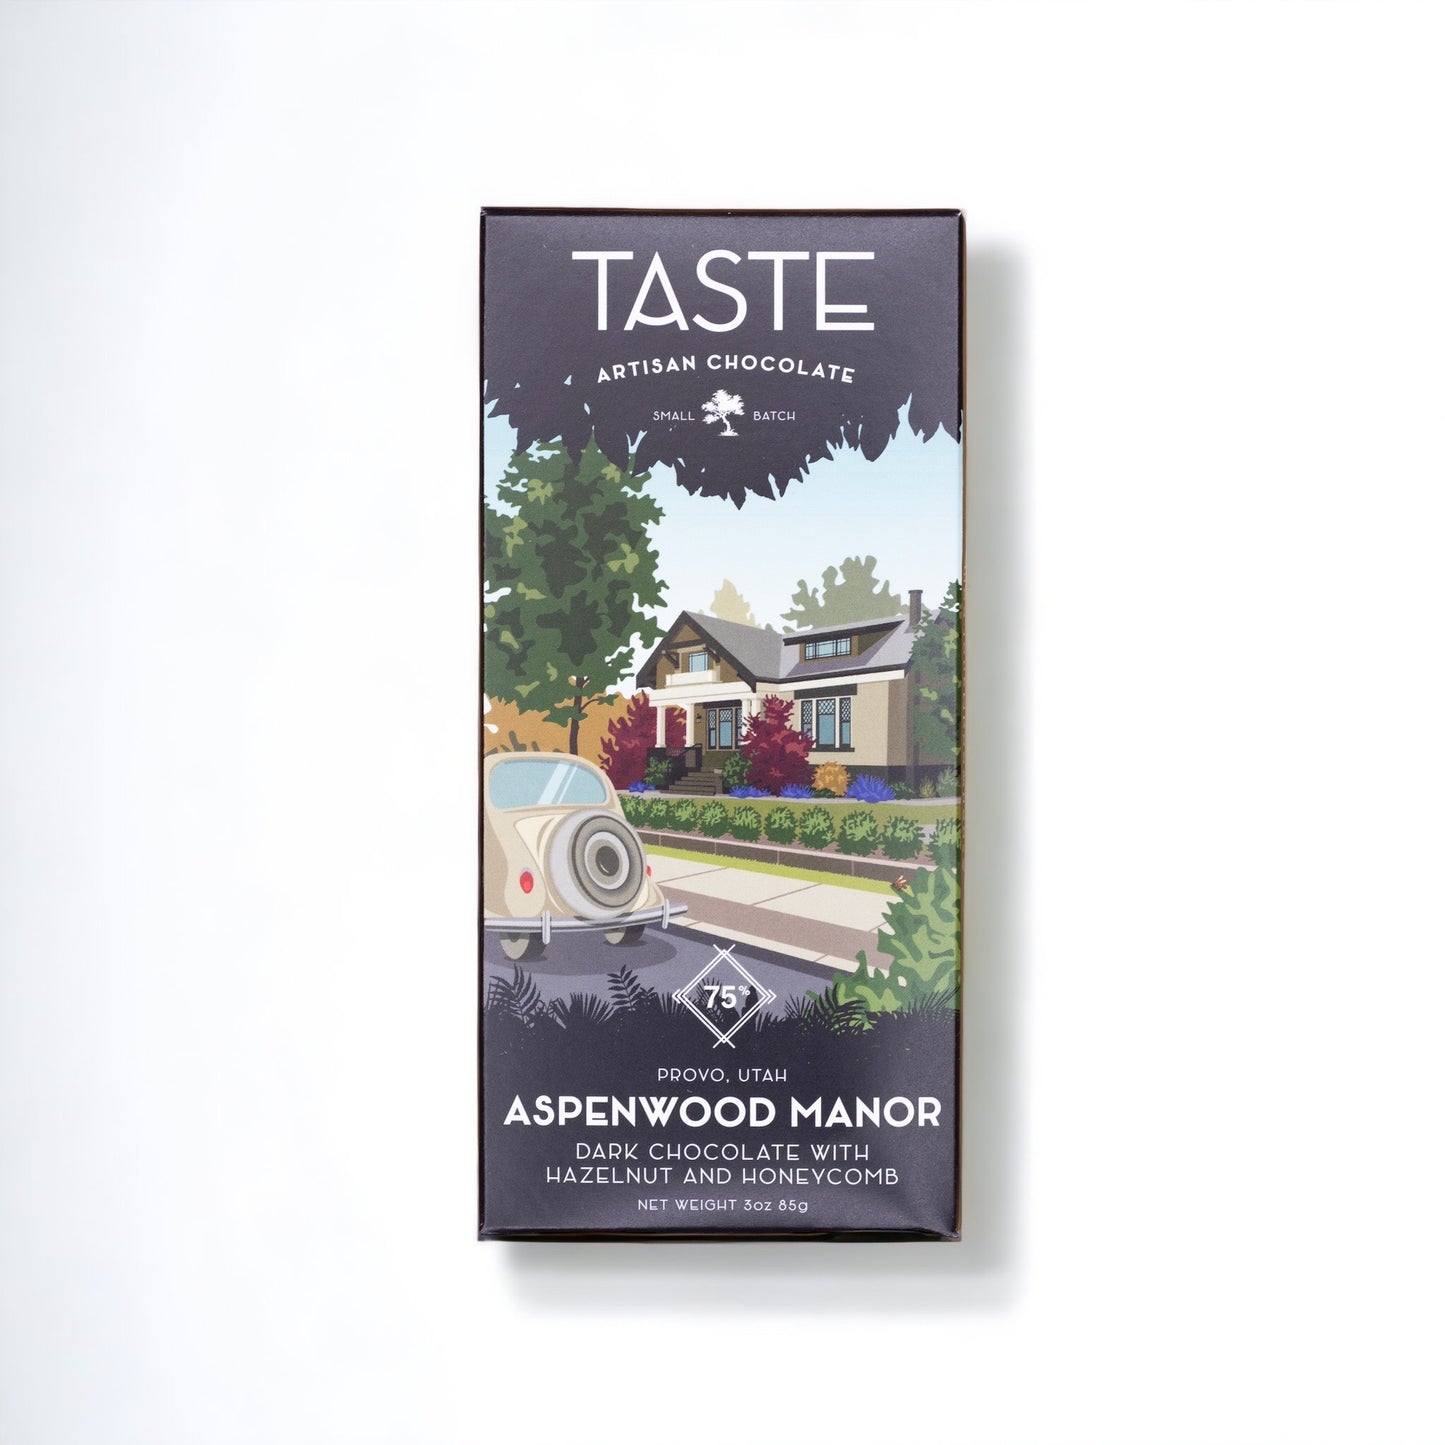 Taste - Aspenwood Manor